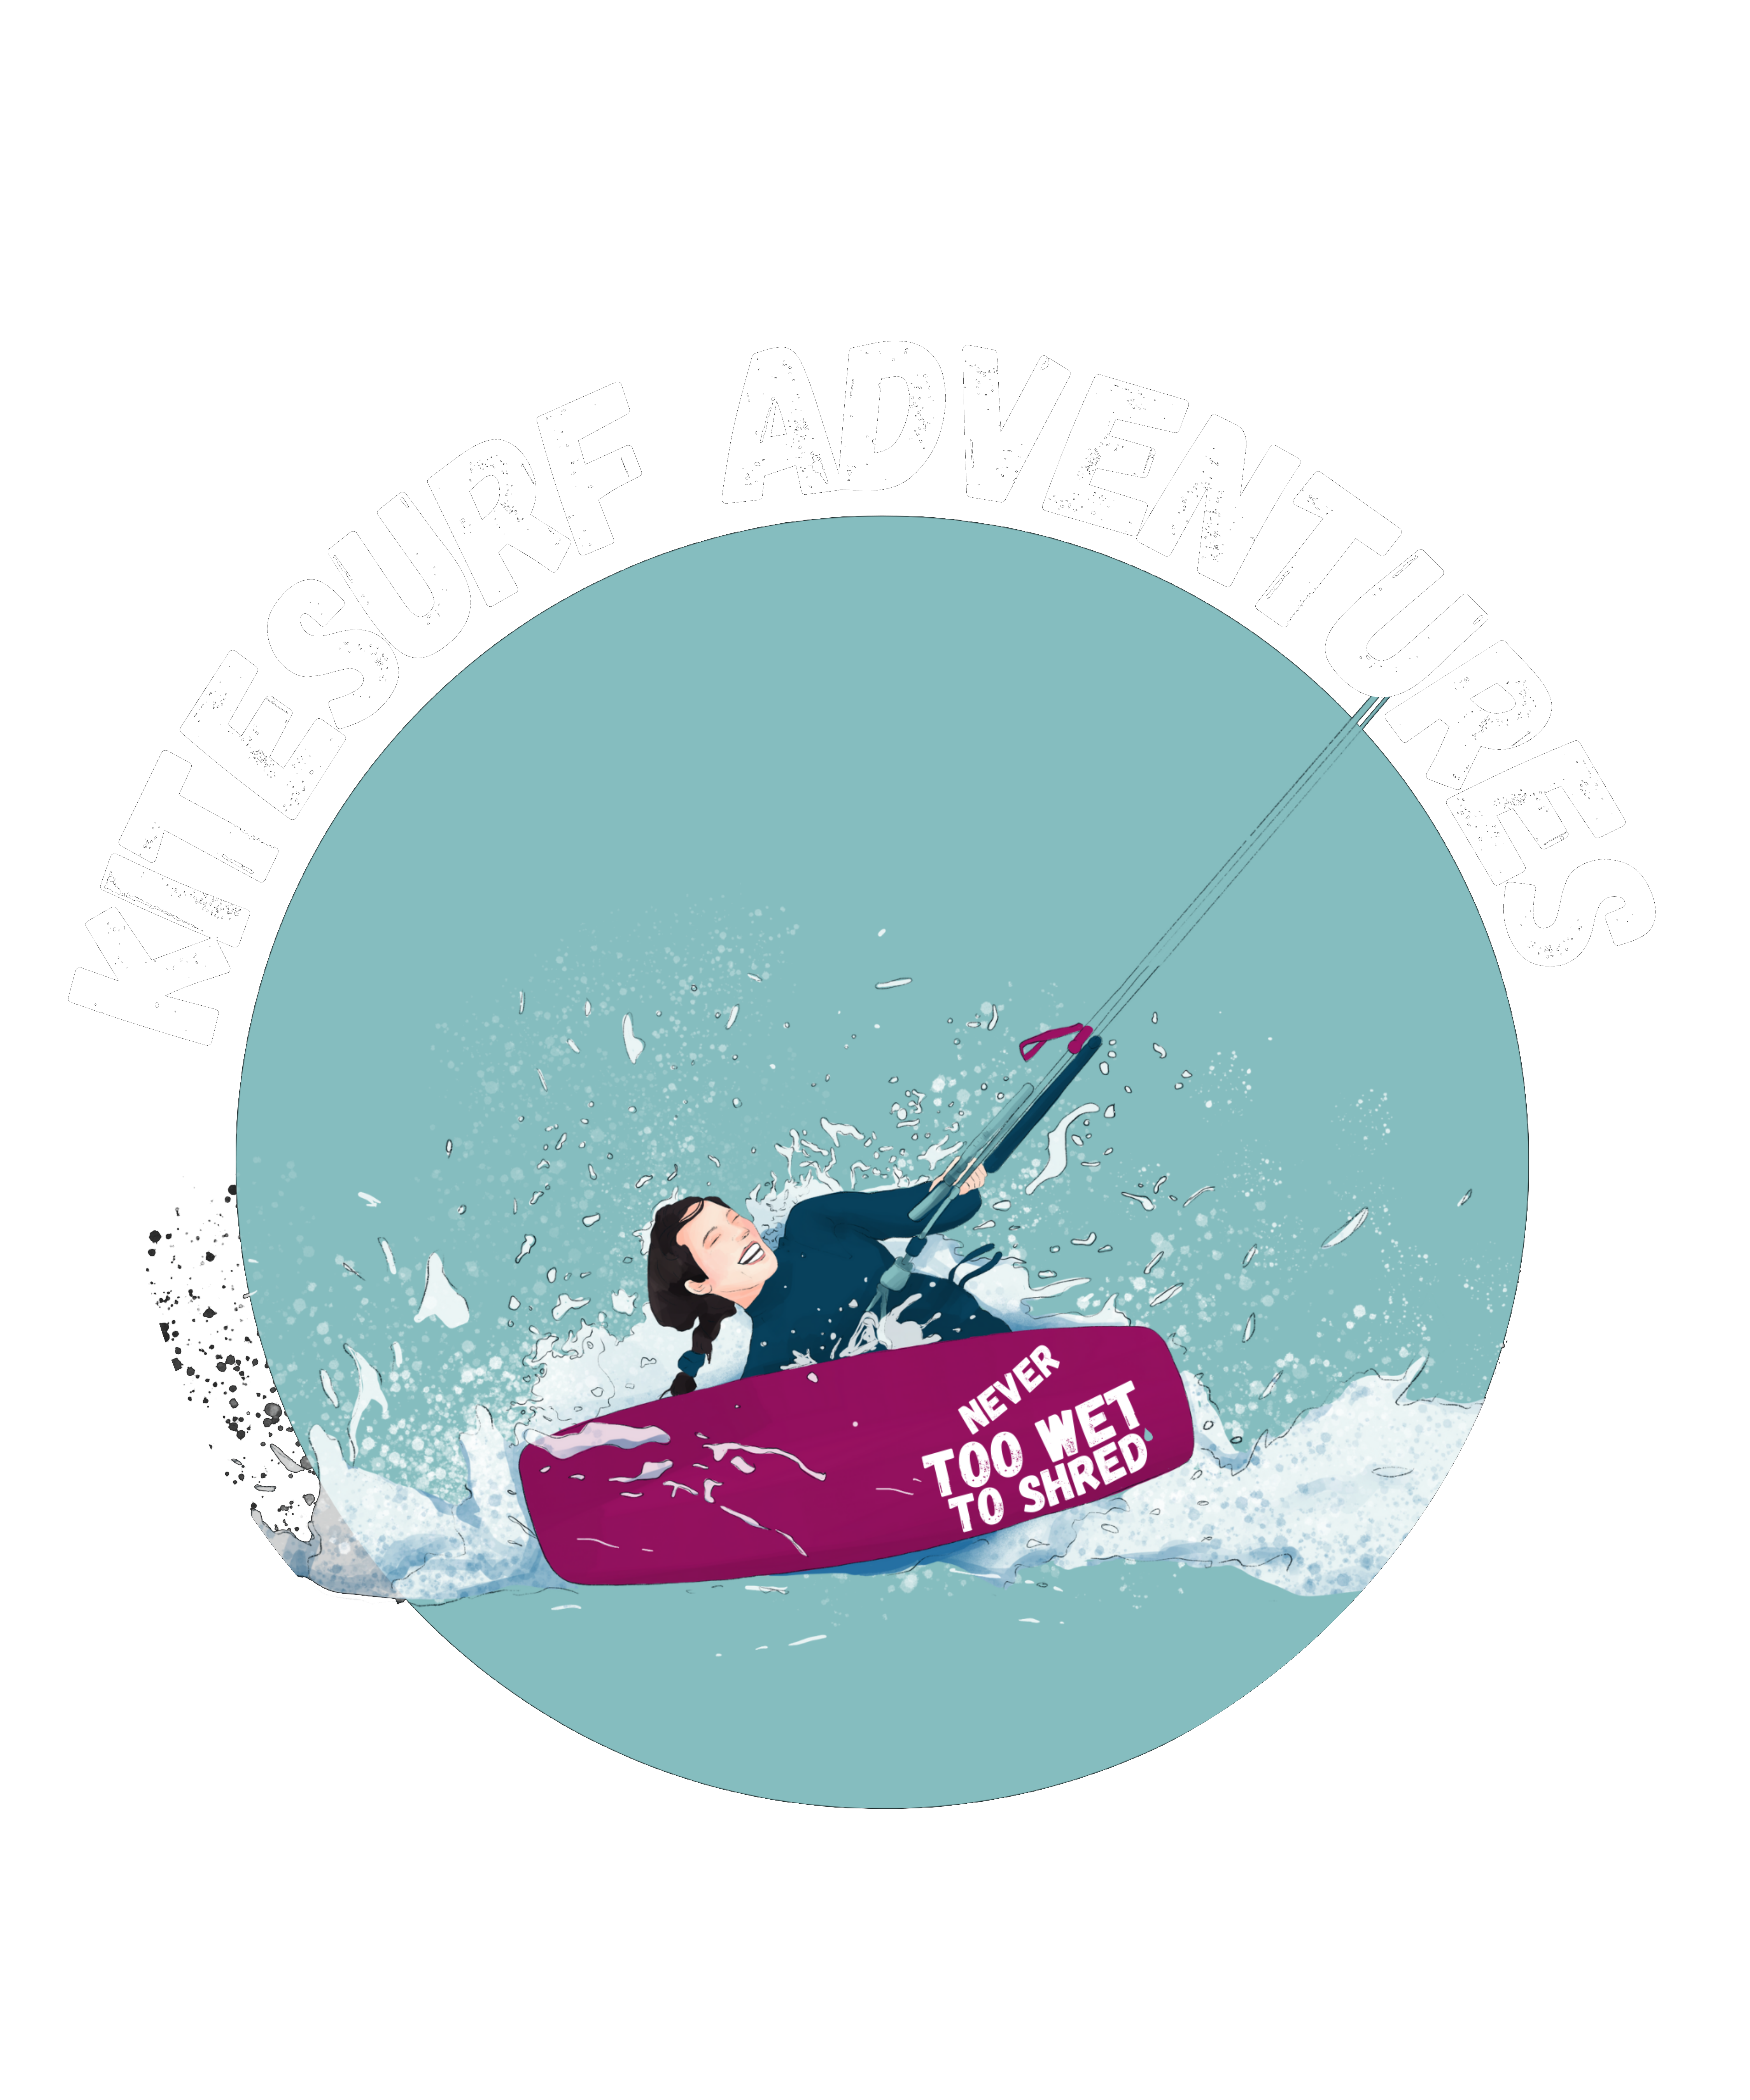 Kitesurf adventures